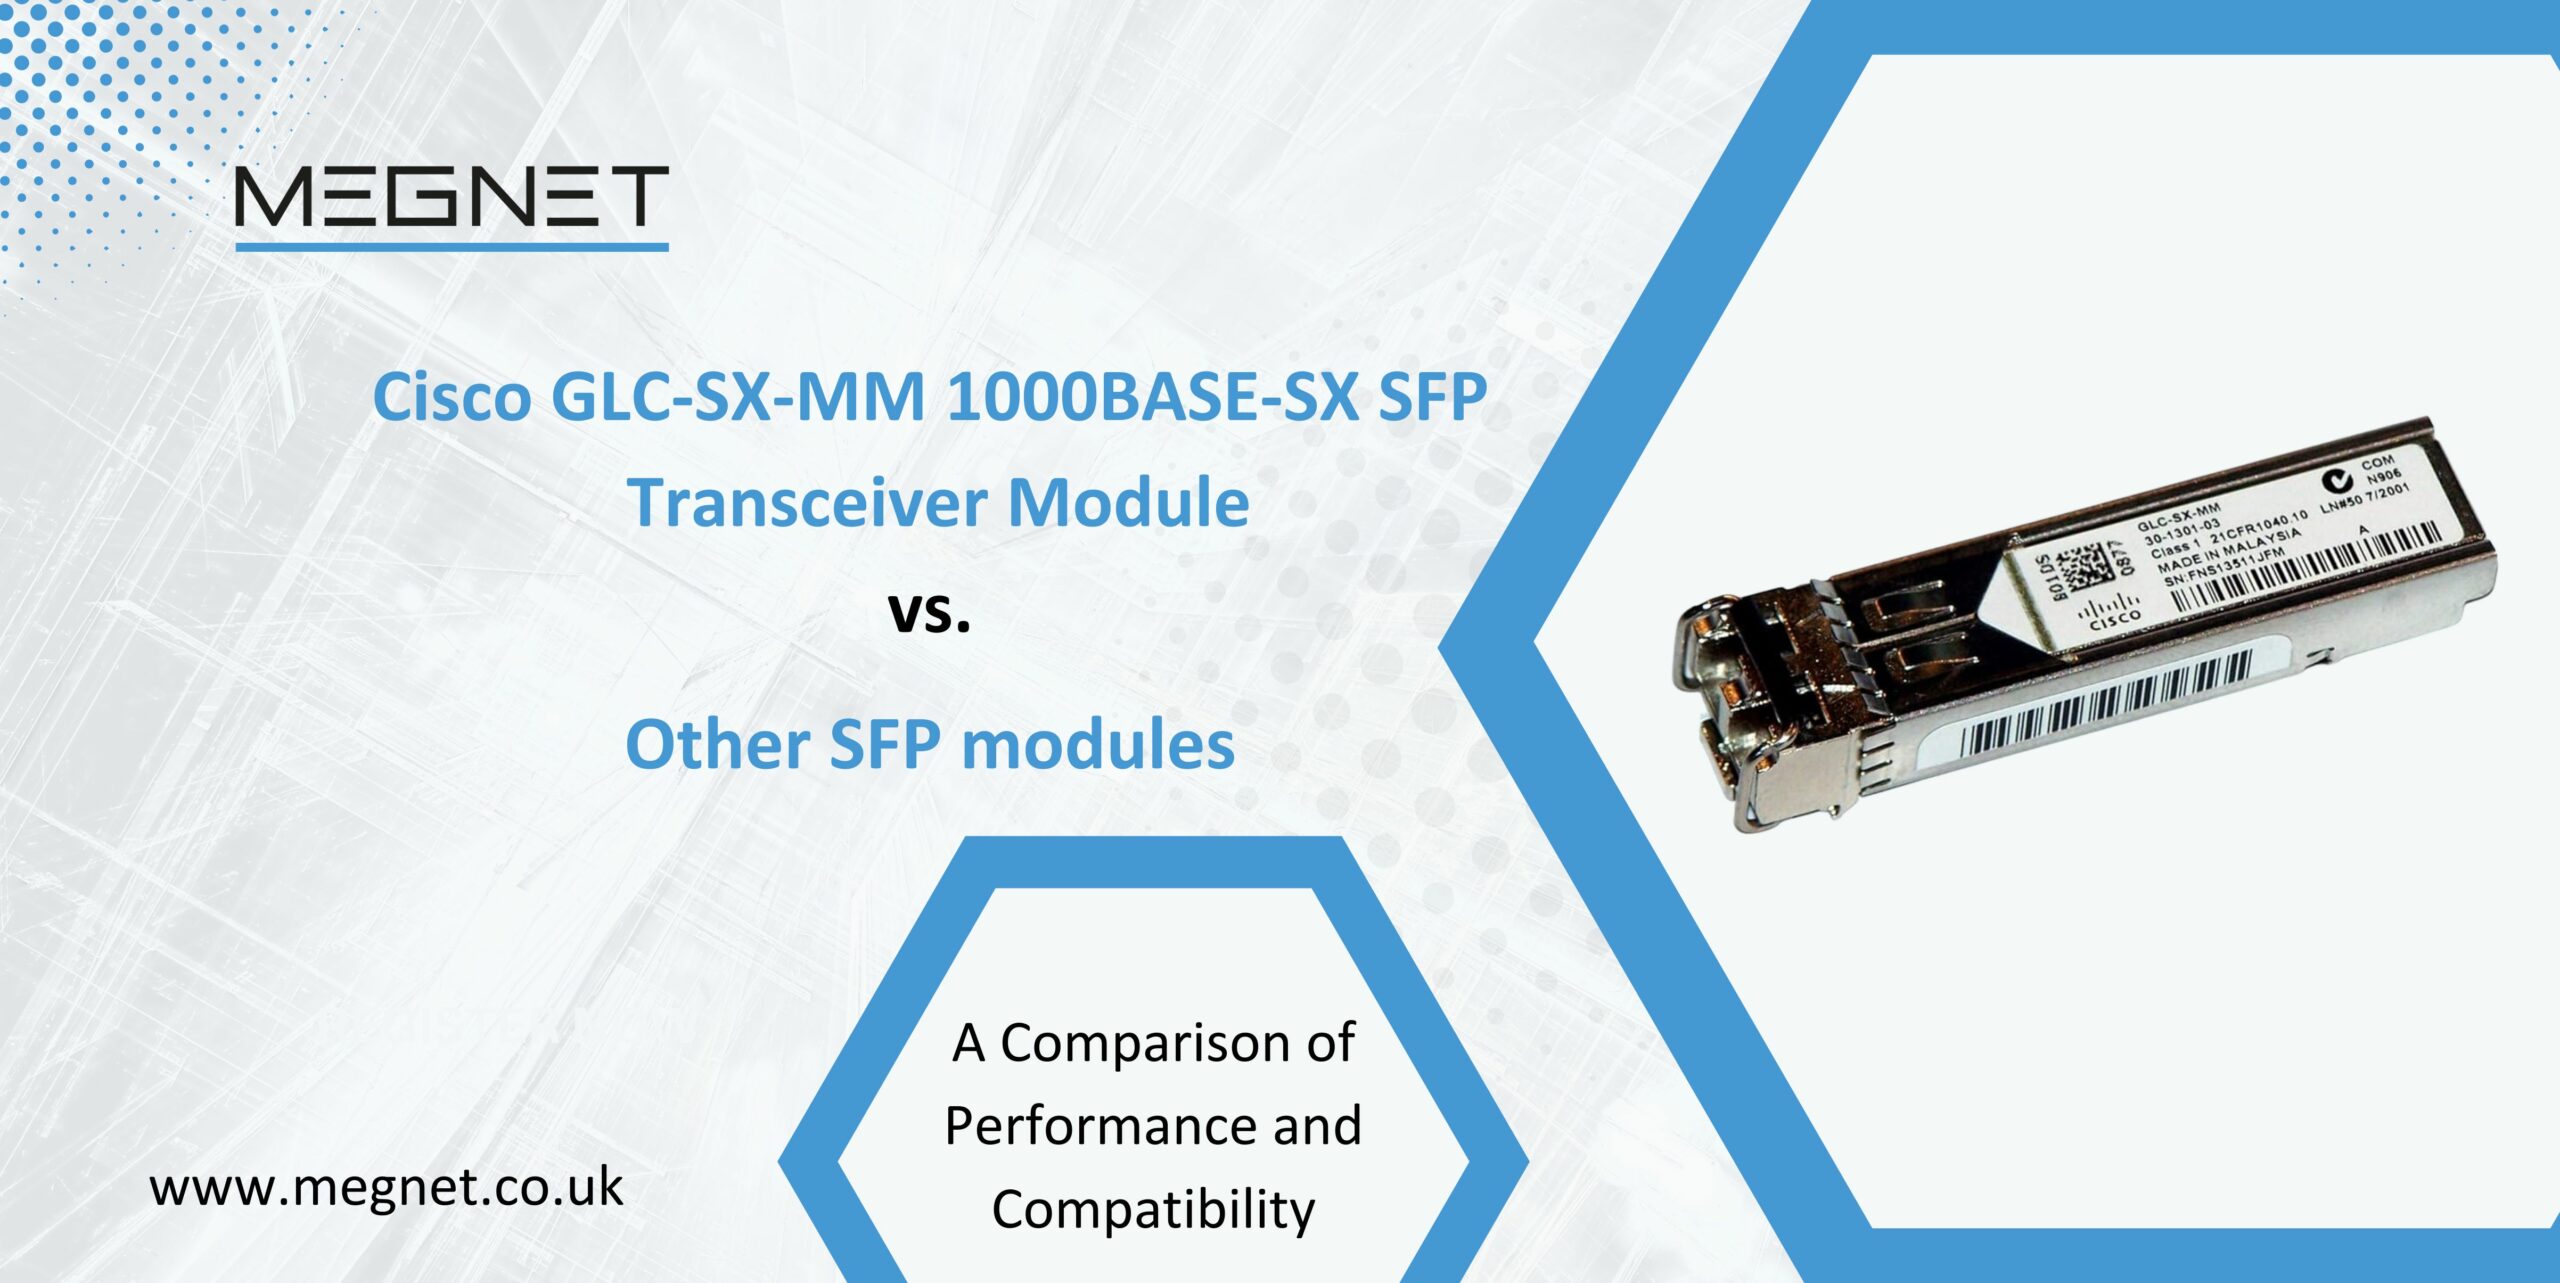 Cisco GLC-SX-MM 1000BASE-SX SFP Transceiver